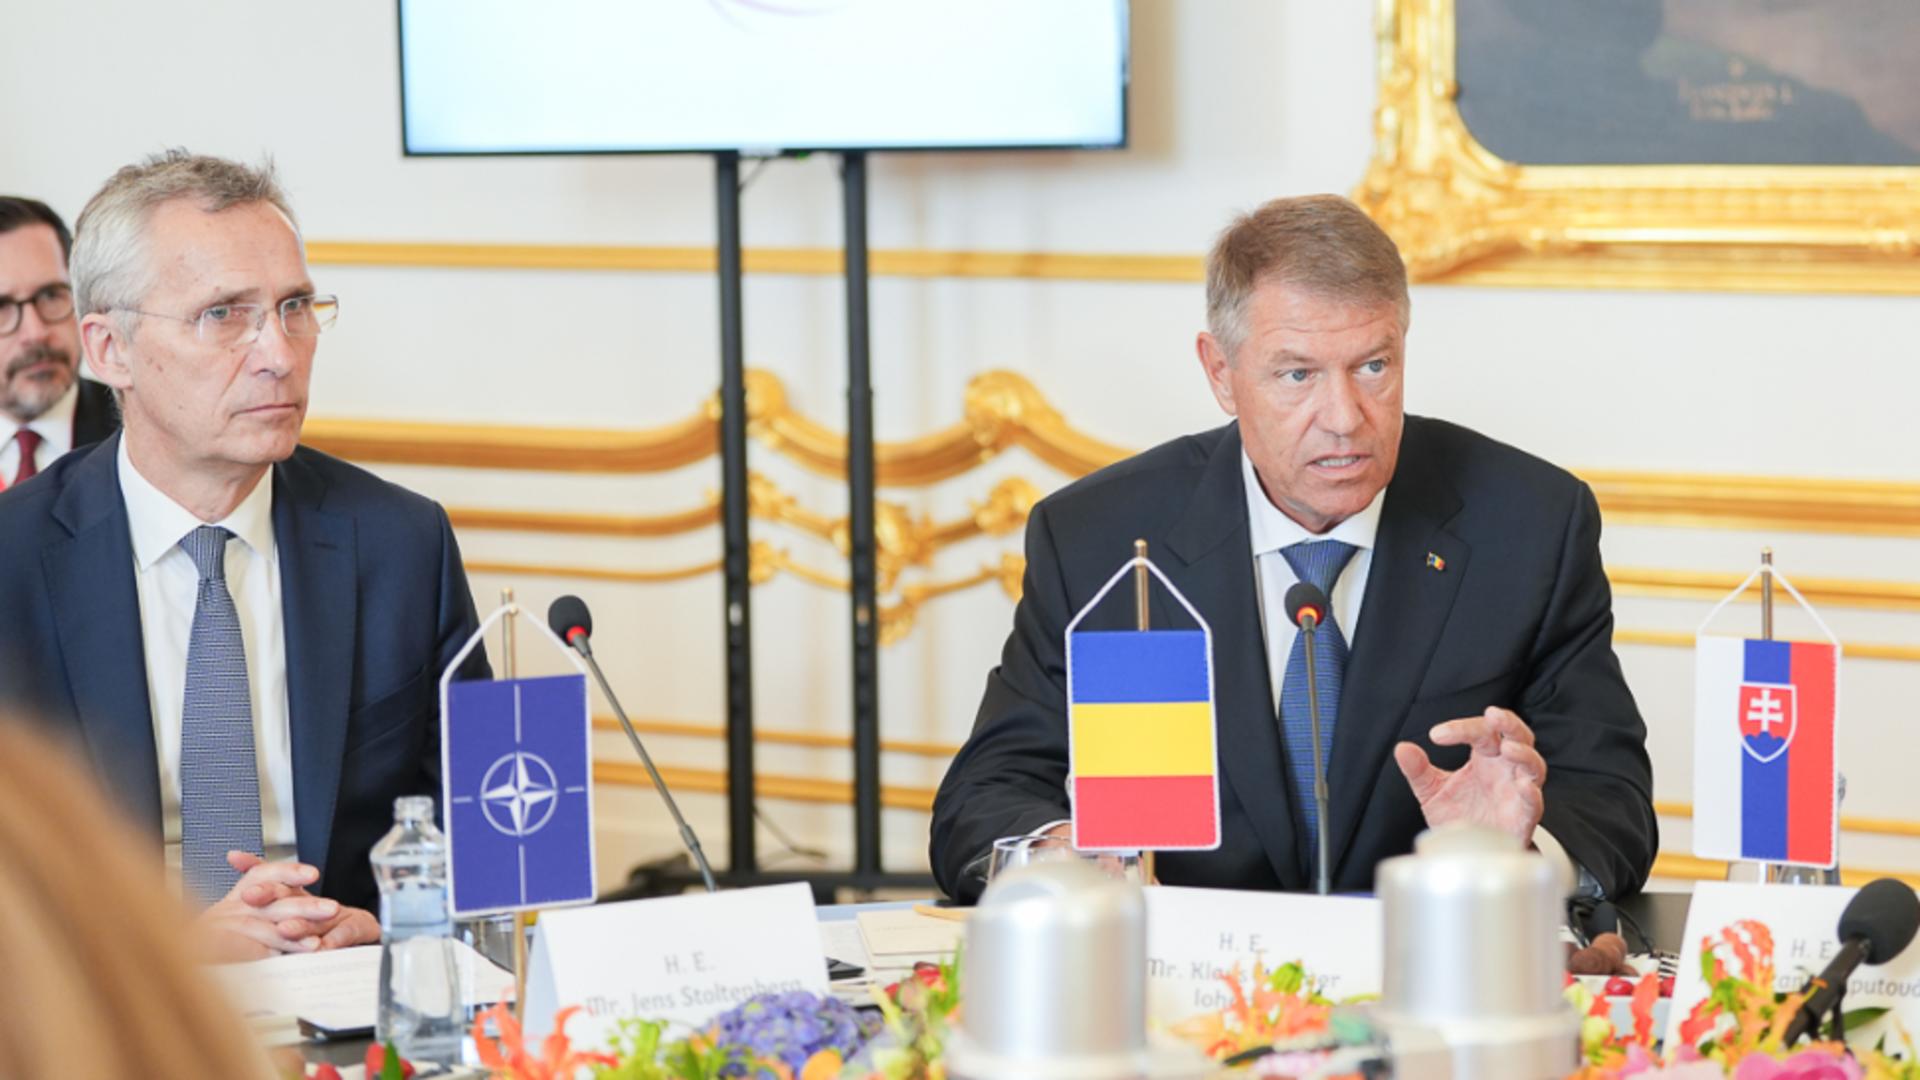 Klaus Iohannis avertizează: Rusia va continua să fie cea mai mare ameninţare la adresa securităţii europene şi euroatlantice